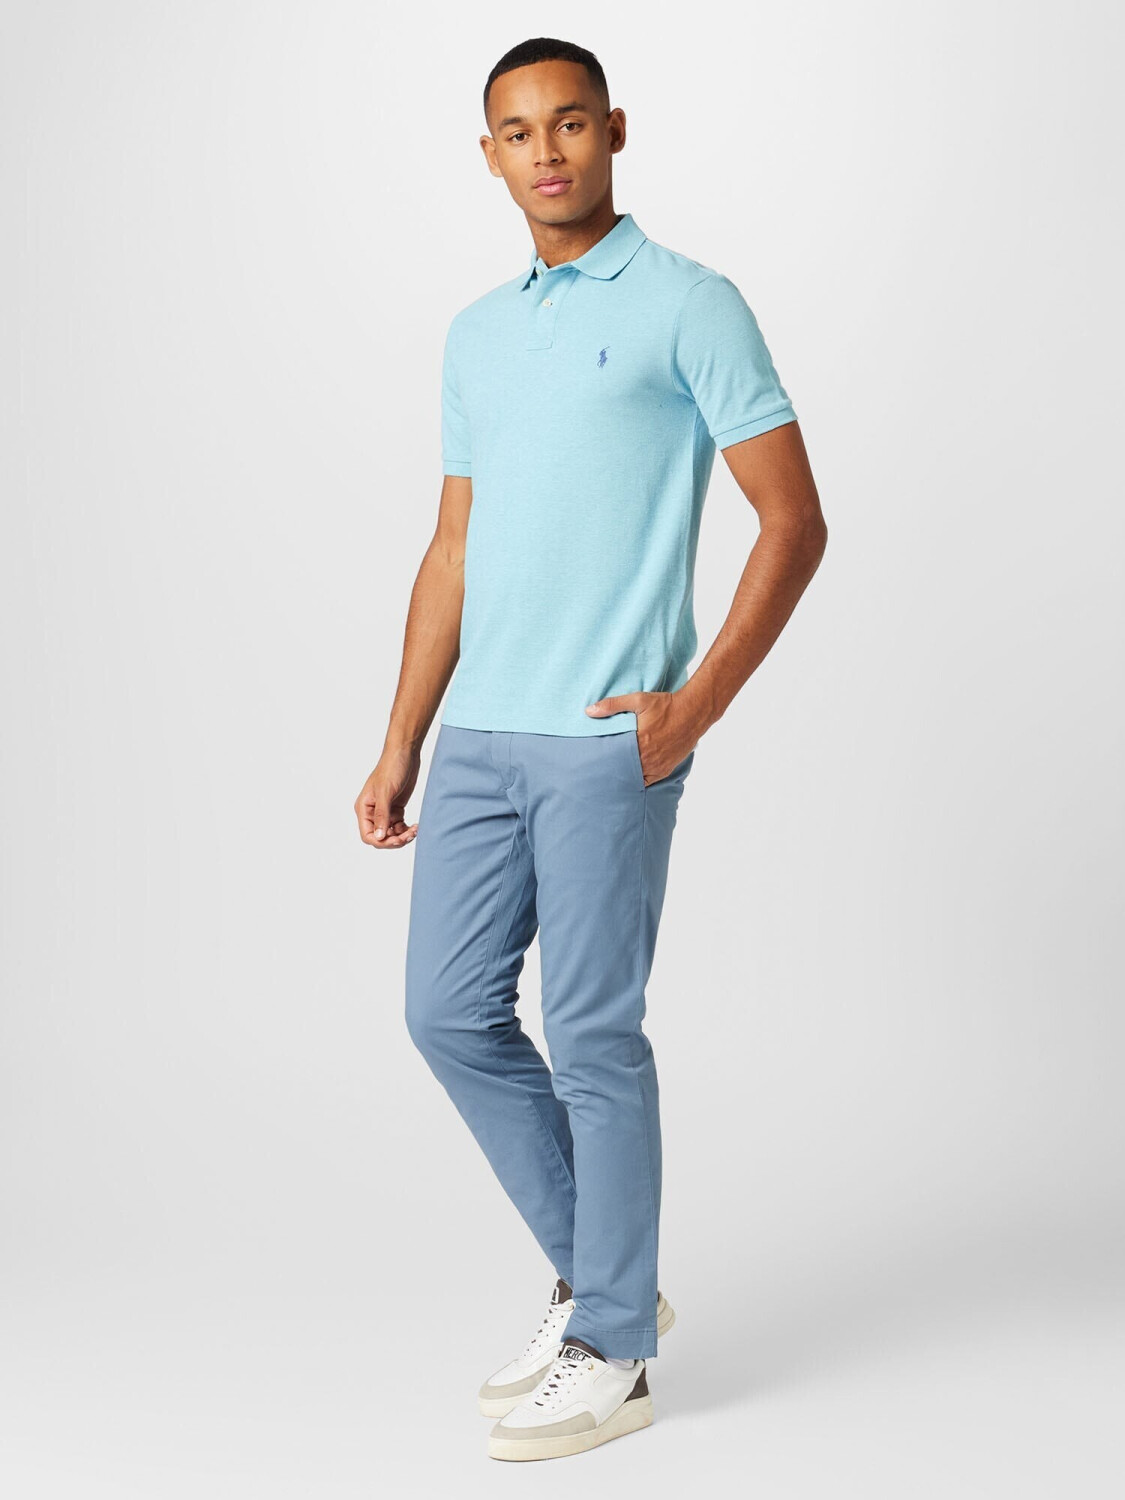 Polo Ralph Lauren Poloshirt (710536856) aqua blue ab € 119,99 |  Preisvergleich bei